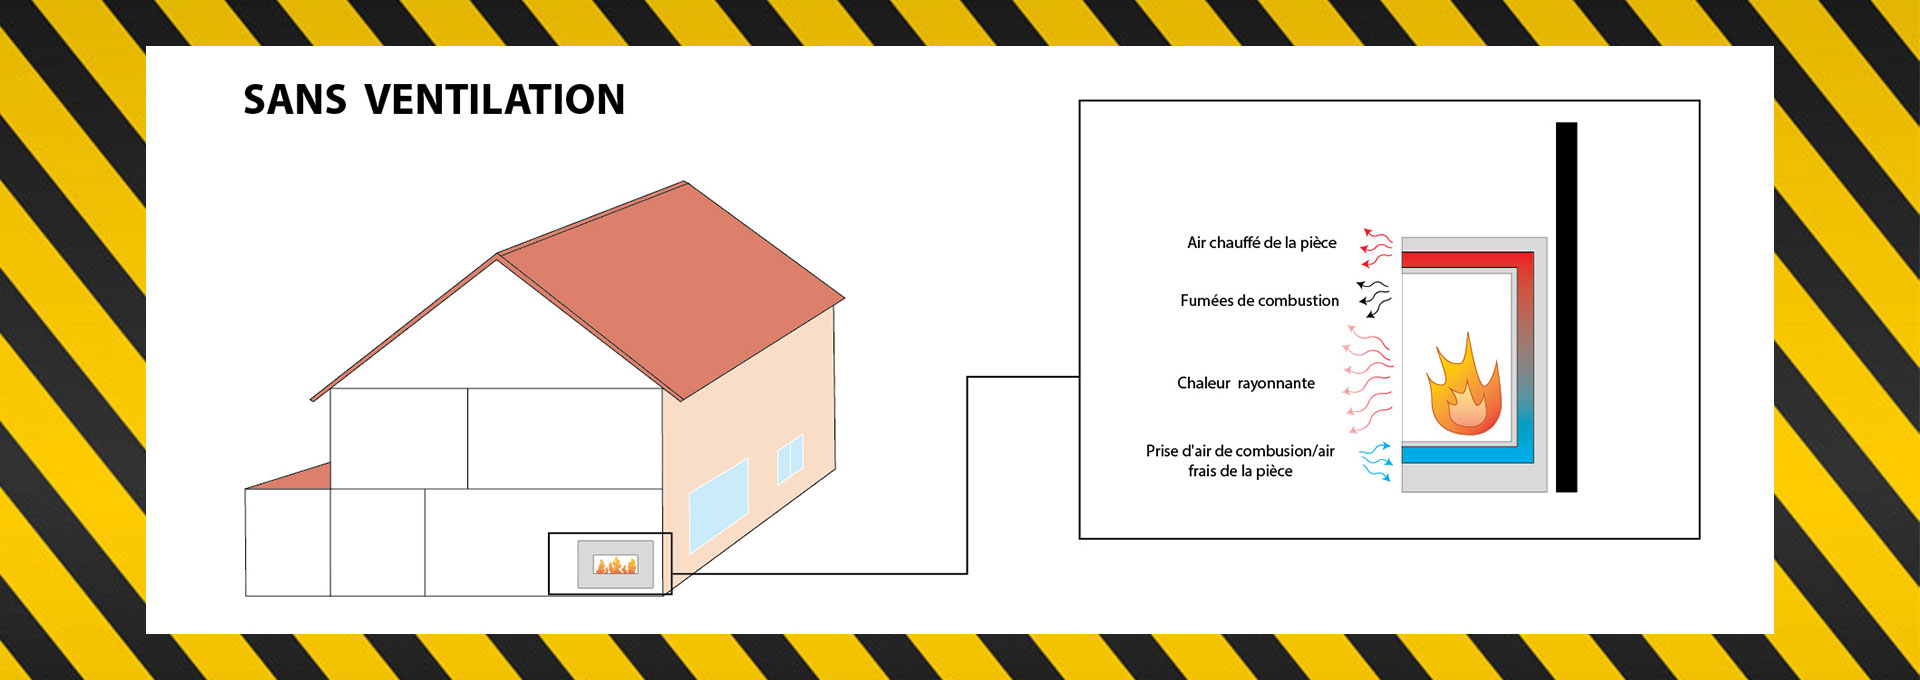 Foyers sans ventilation 101 | Sécurité des feux sans ventilation 